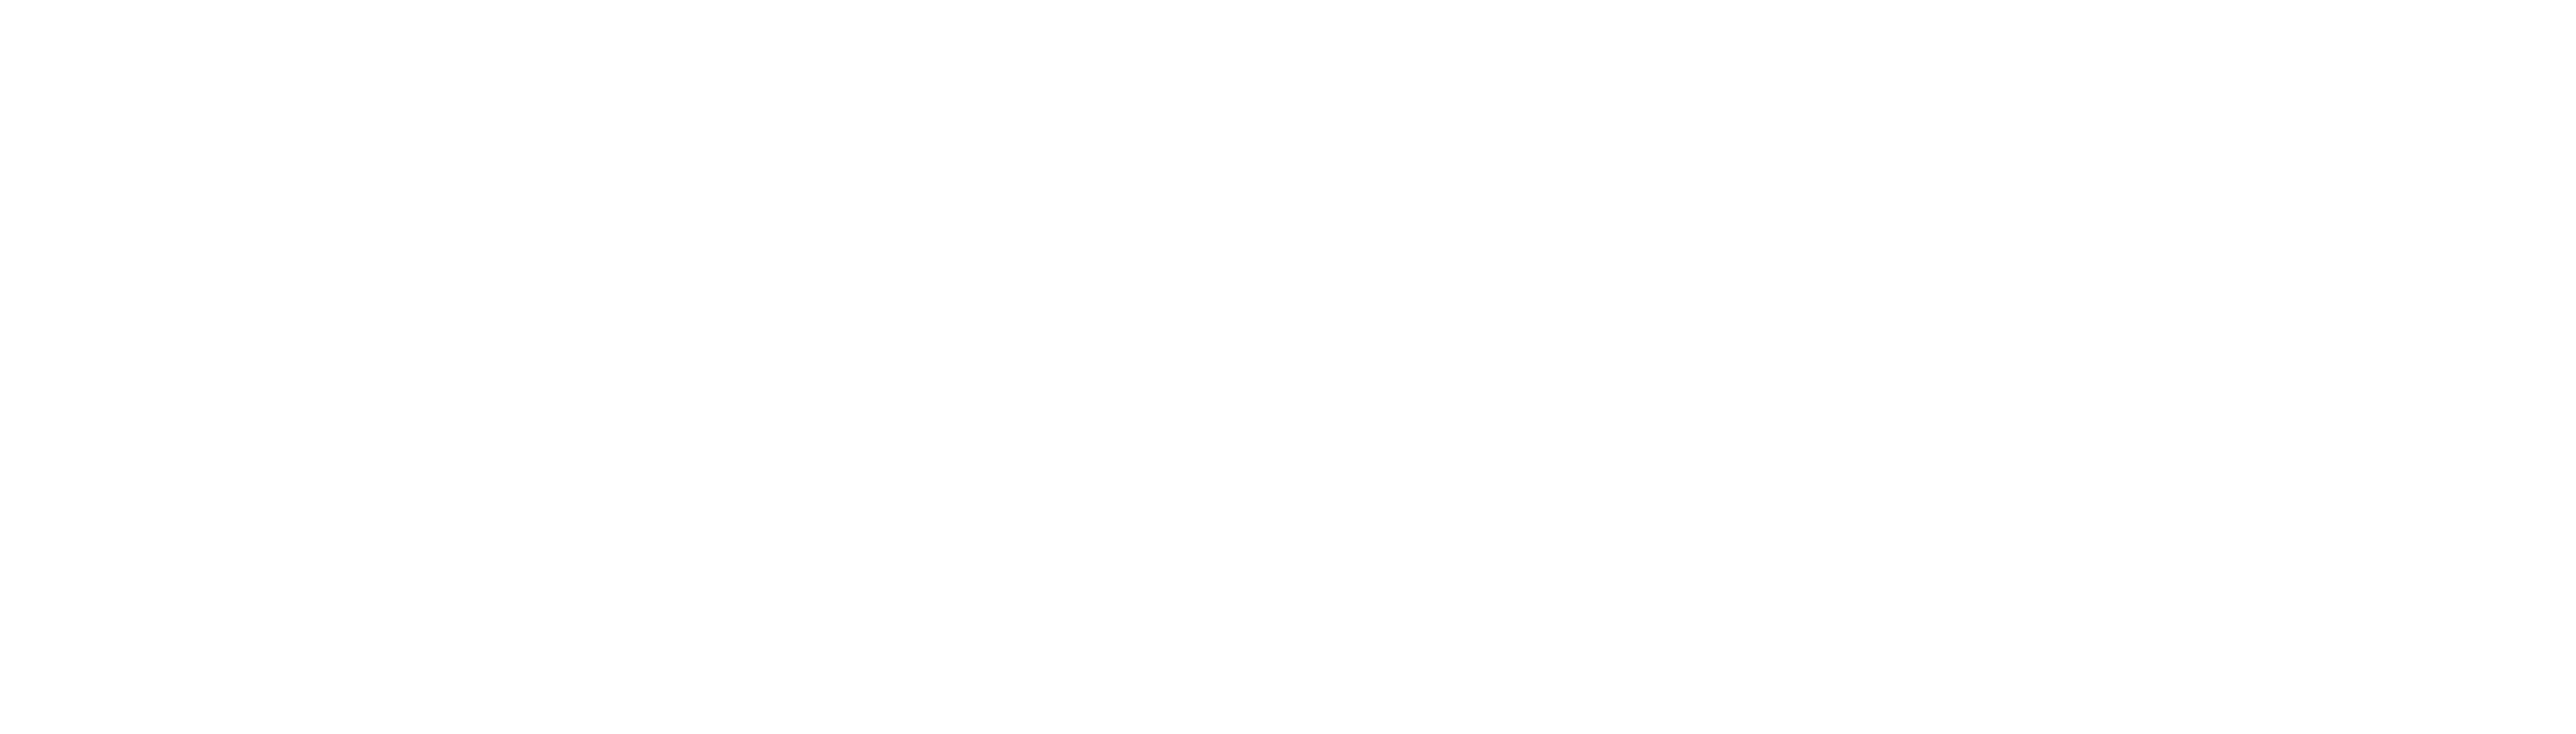 Avaya Logo - Avaya Logo White Network Solutions